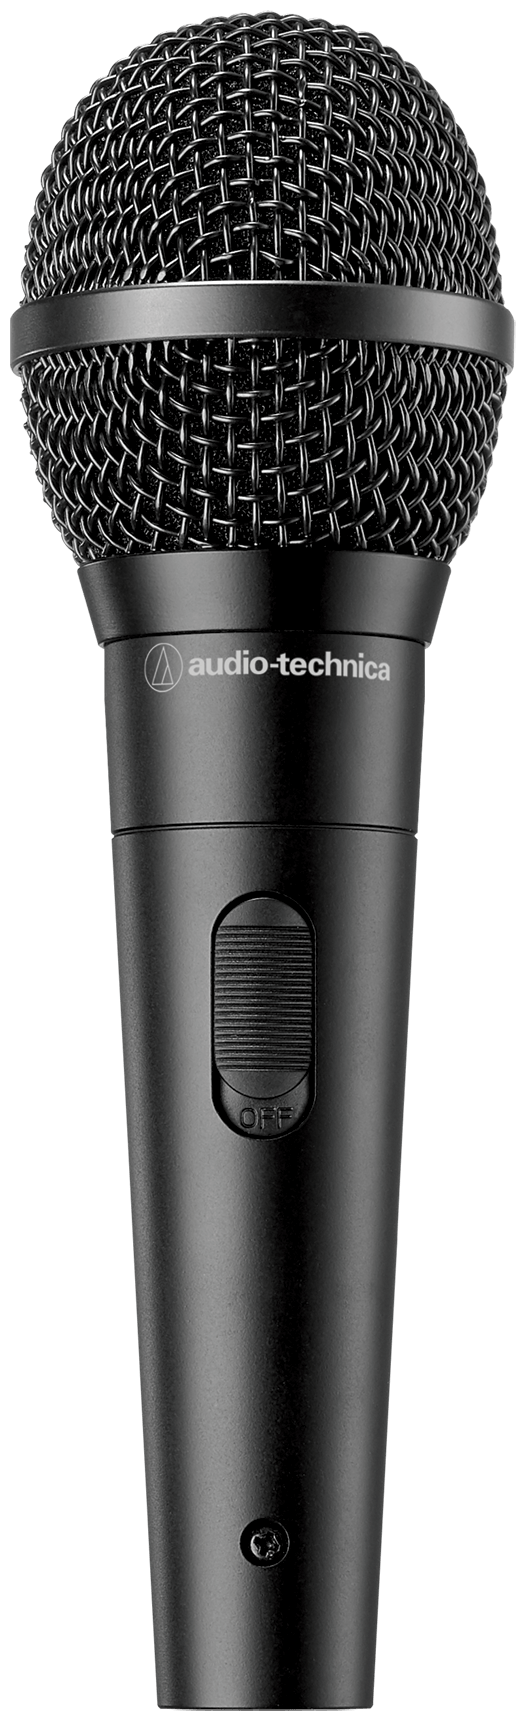 Микрофон Audio-Technica ATR1300x, черный